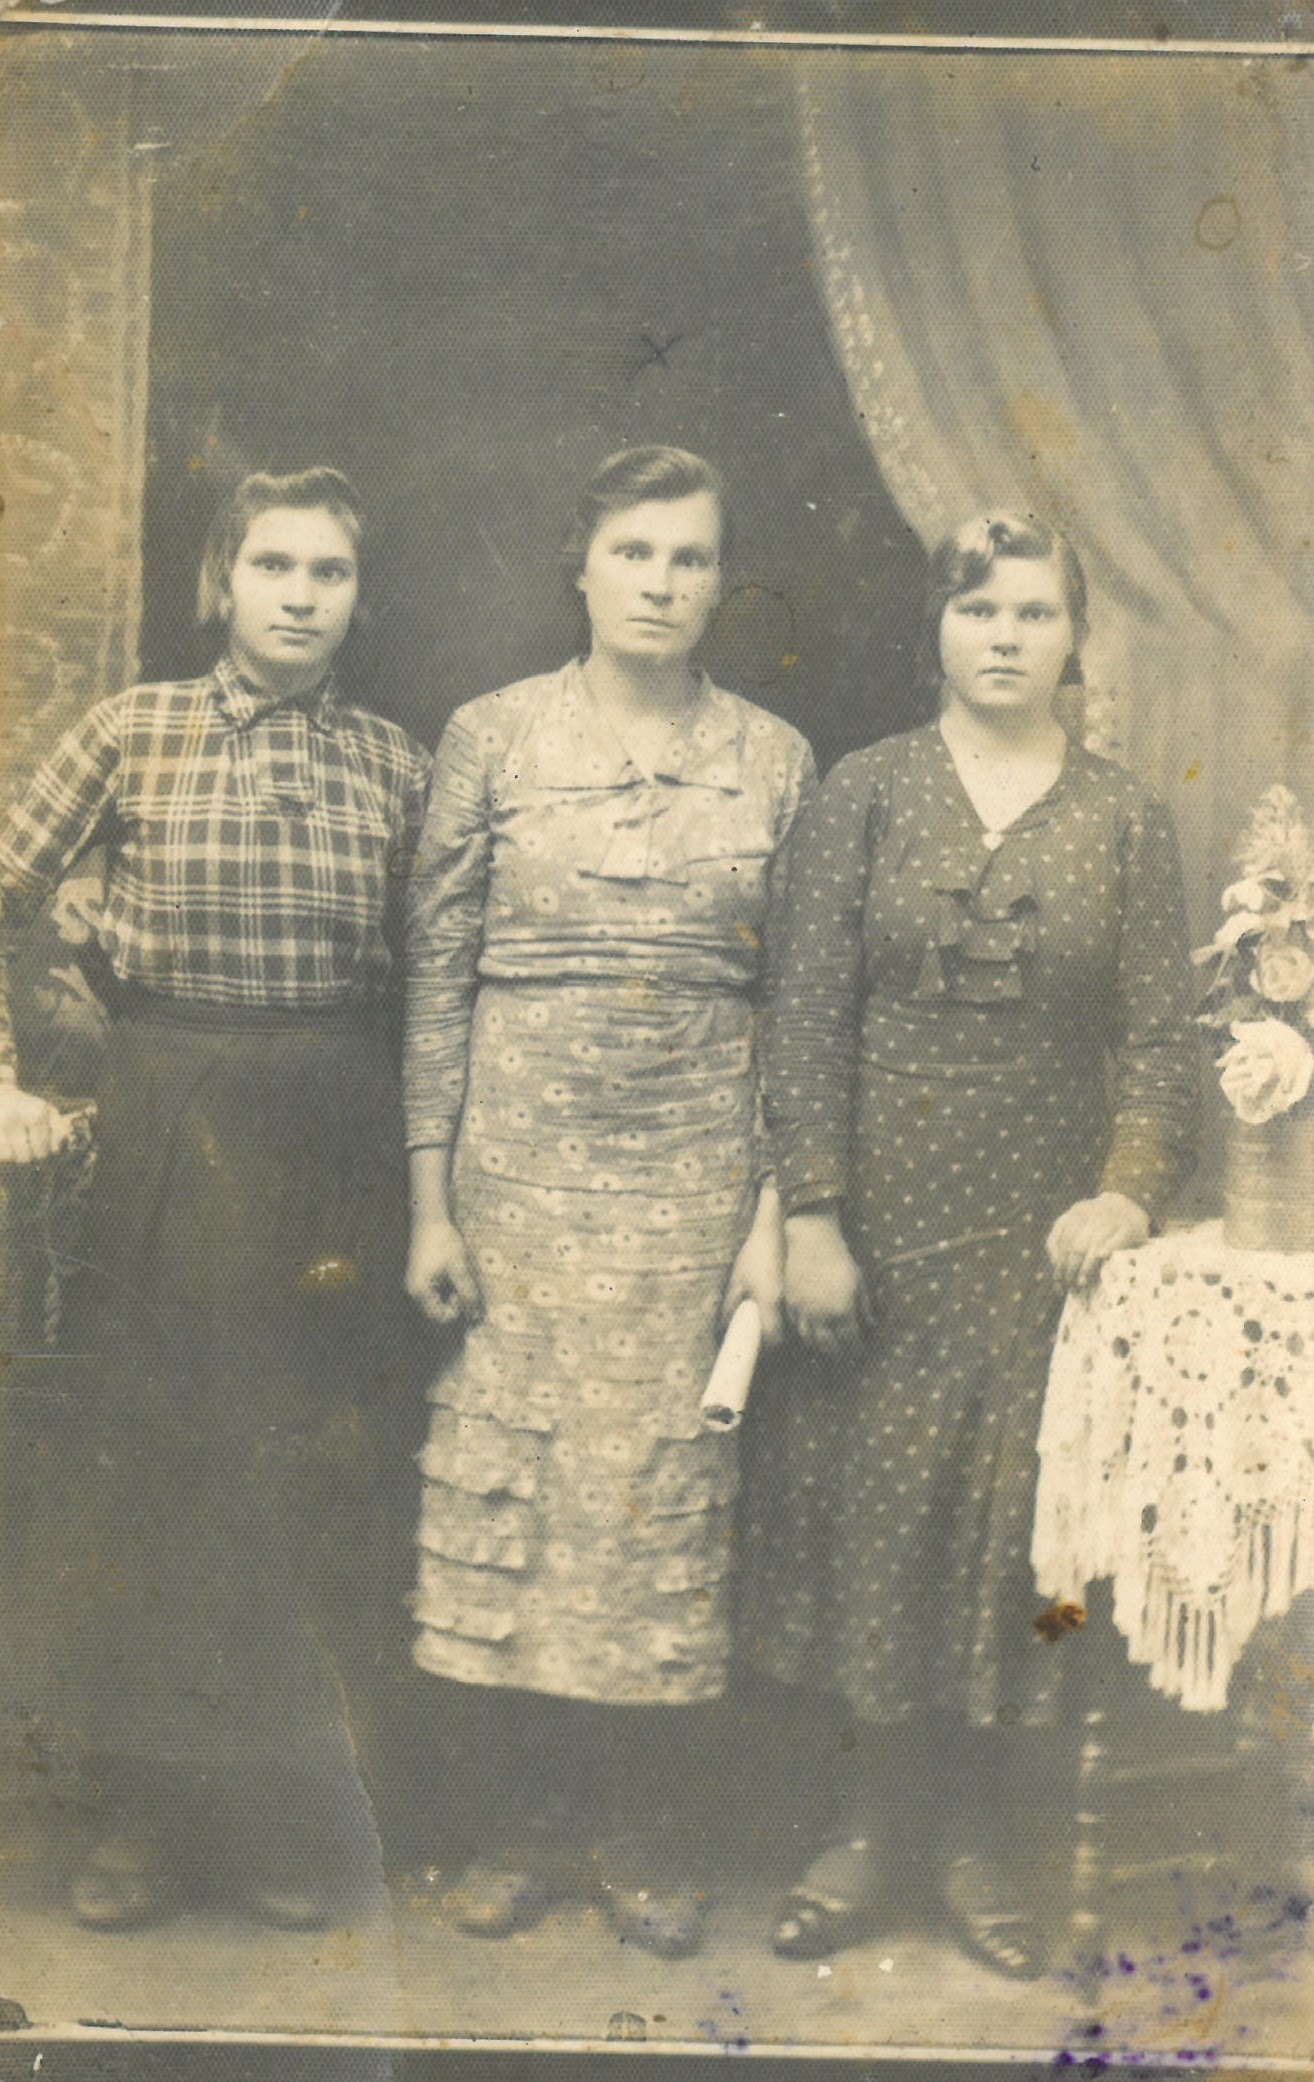 Nepriklausomos Lietuvos kariuomenės kario, Vorkutos lagerių kalinio Jurgio Stasiūno (1920–2004) žmona Anelė Petrauskaitė-Stasiūnienė (1931–1997) (viduryje) su draugėmis